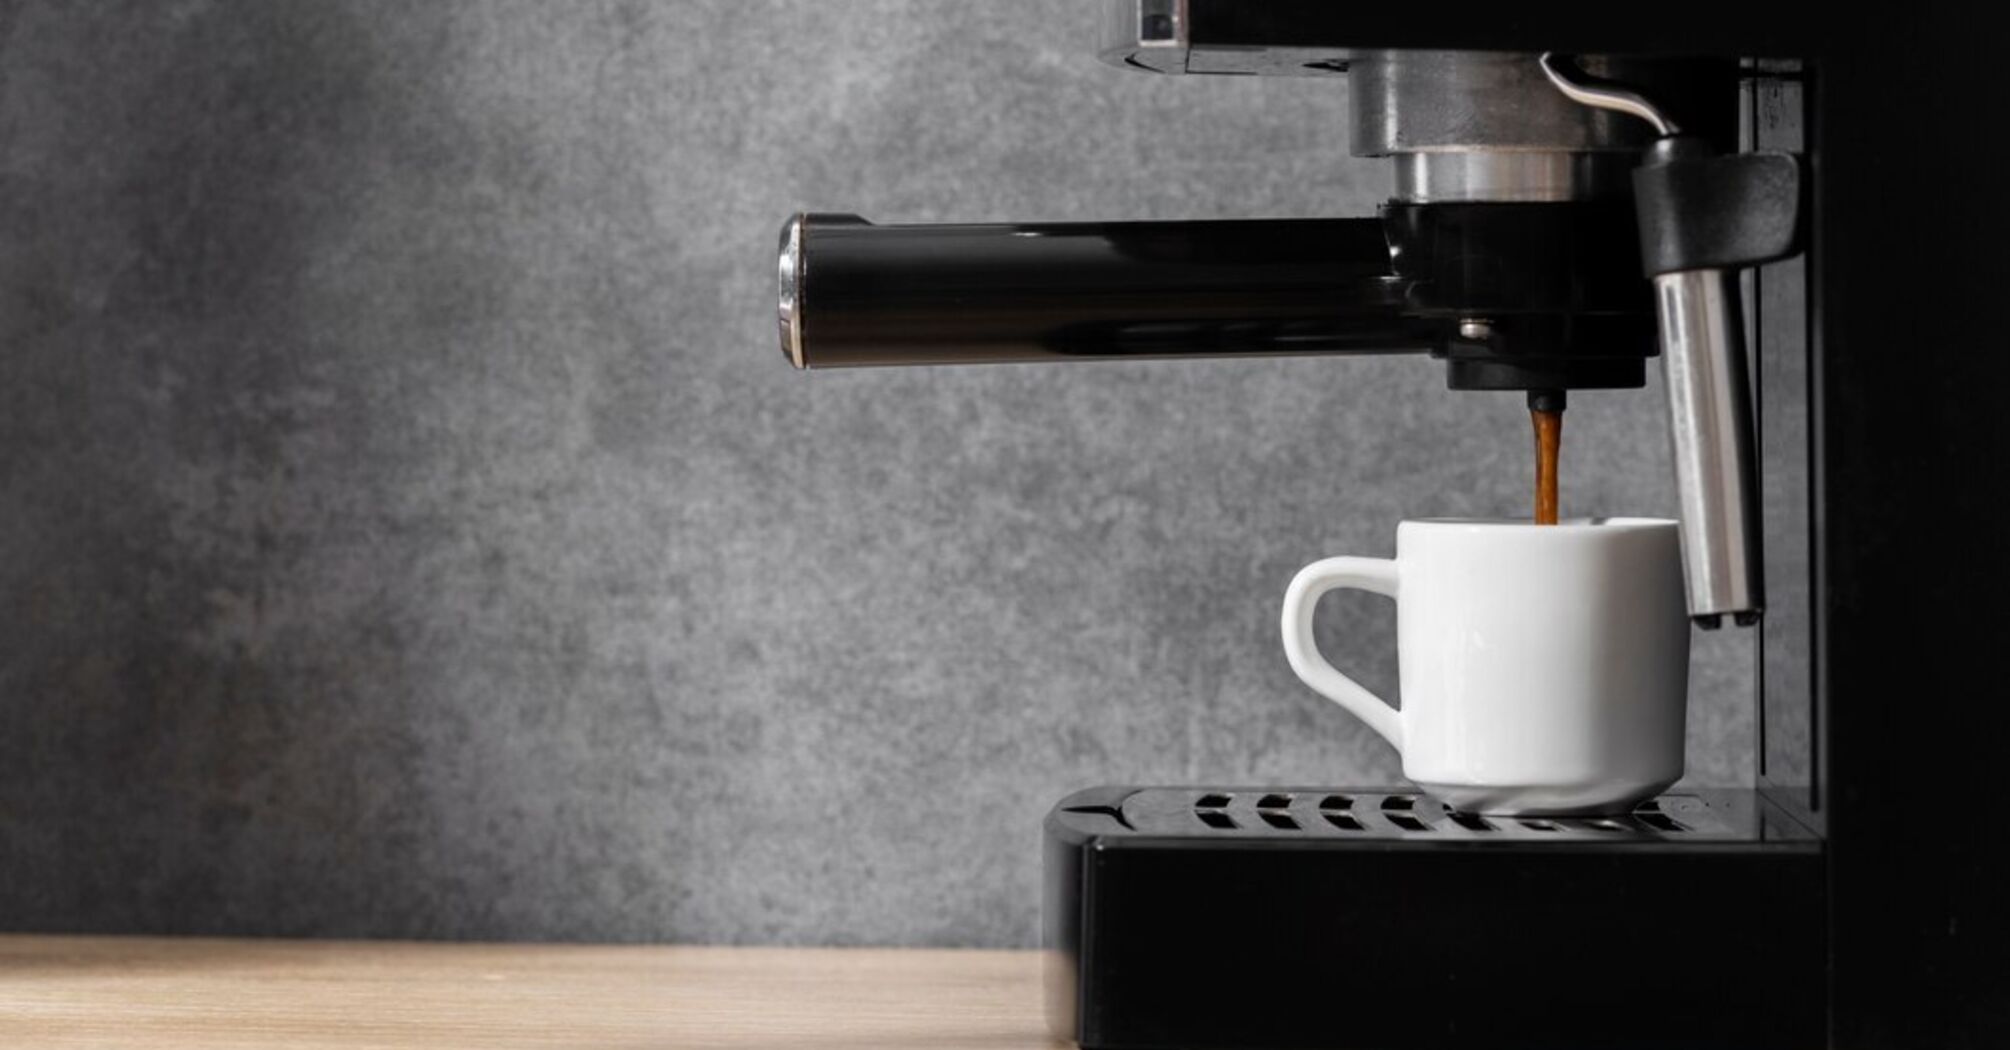 Преимущества и недостатки кофемашин: на что следует обратить внимание перед покупкой